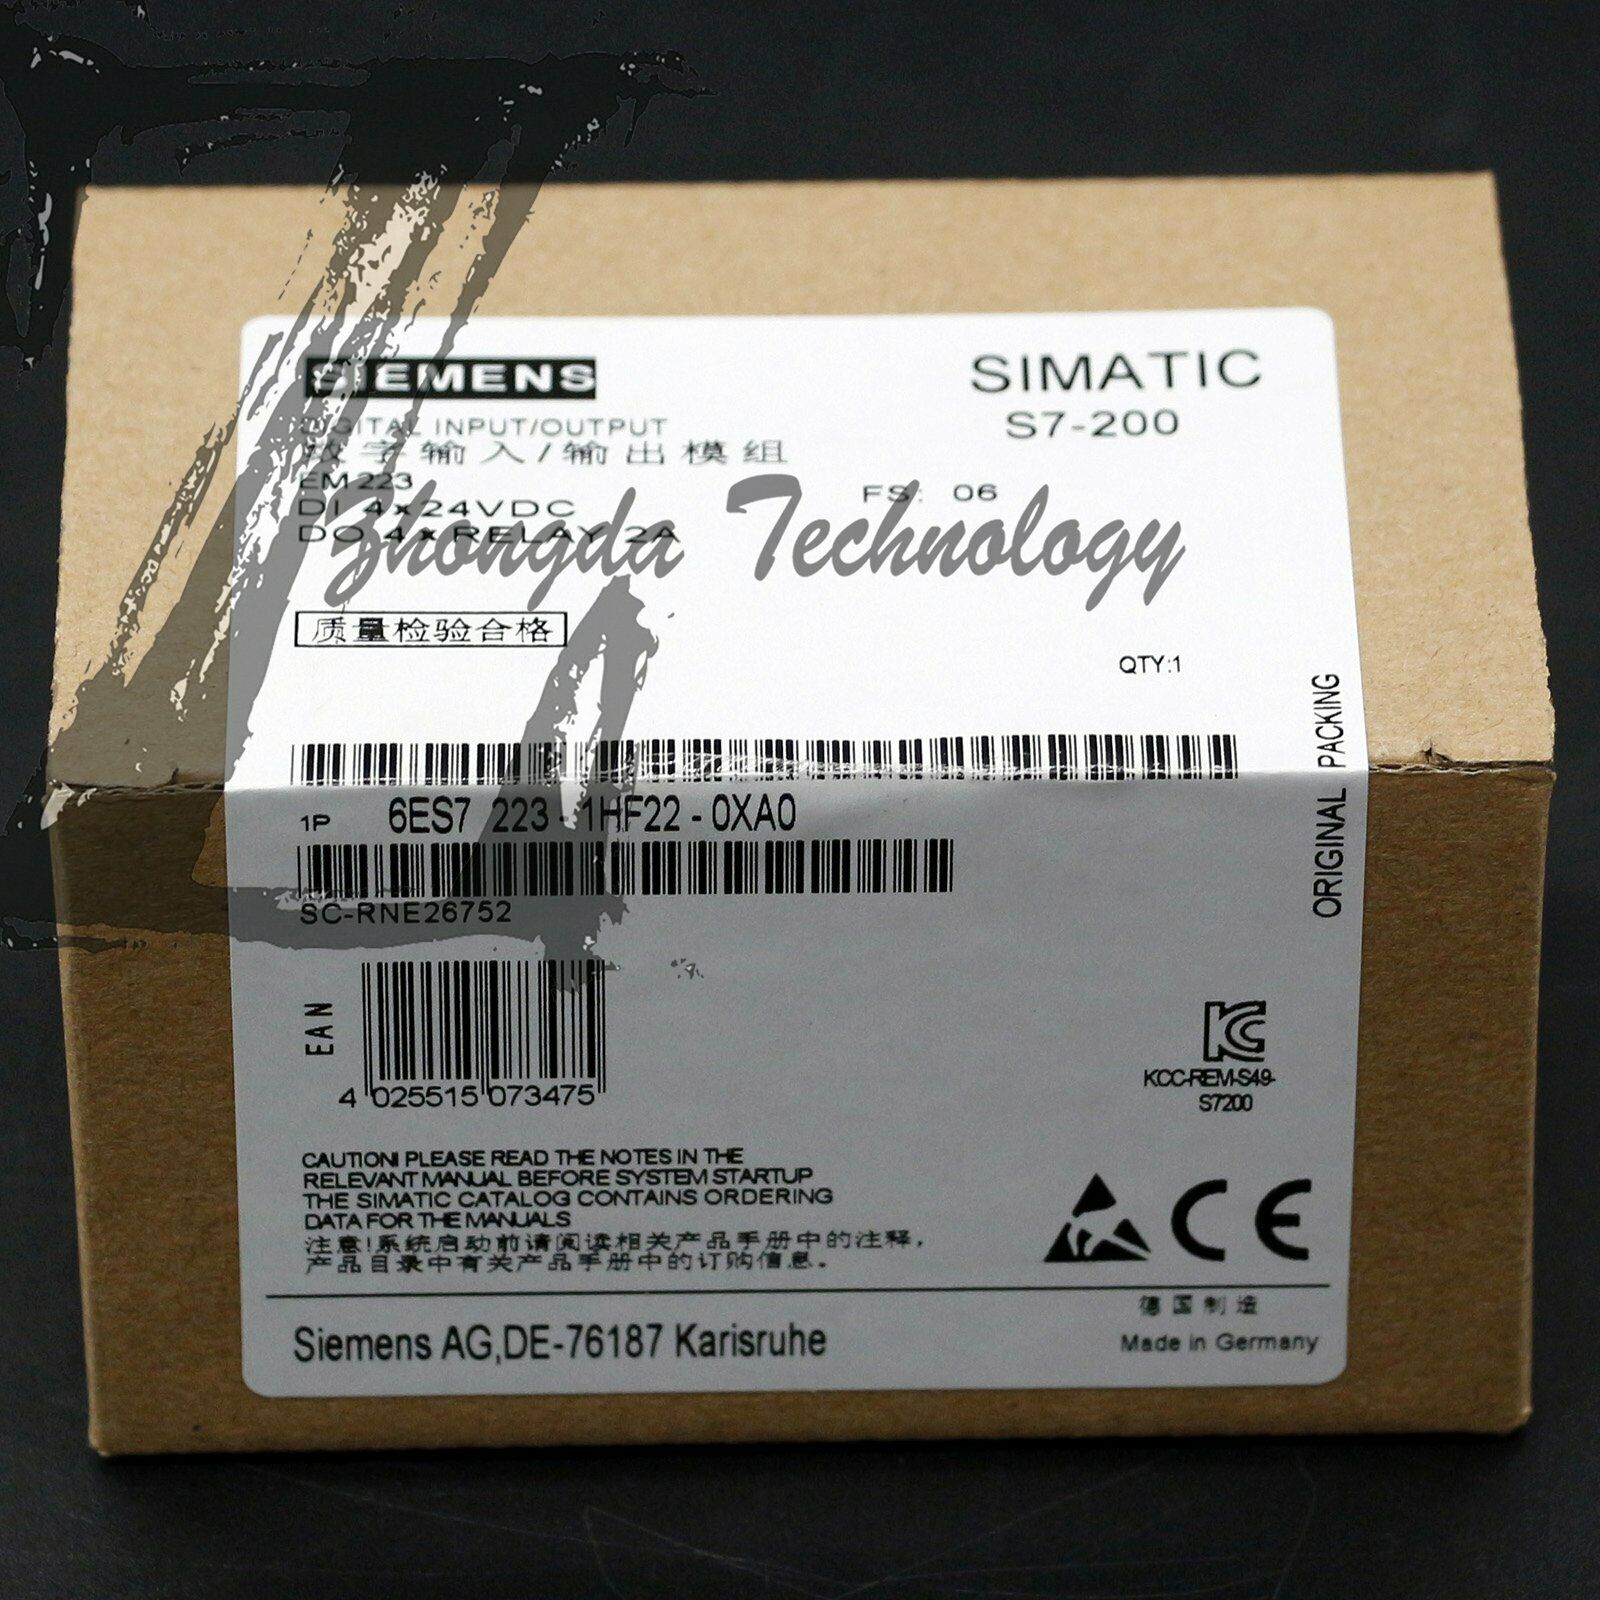 سيمنز الجديدة، وحدة الإدخال / الإخراج الرقمية، SIMATIC S7-200، 6ES7 223-1HF22-0XA0